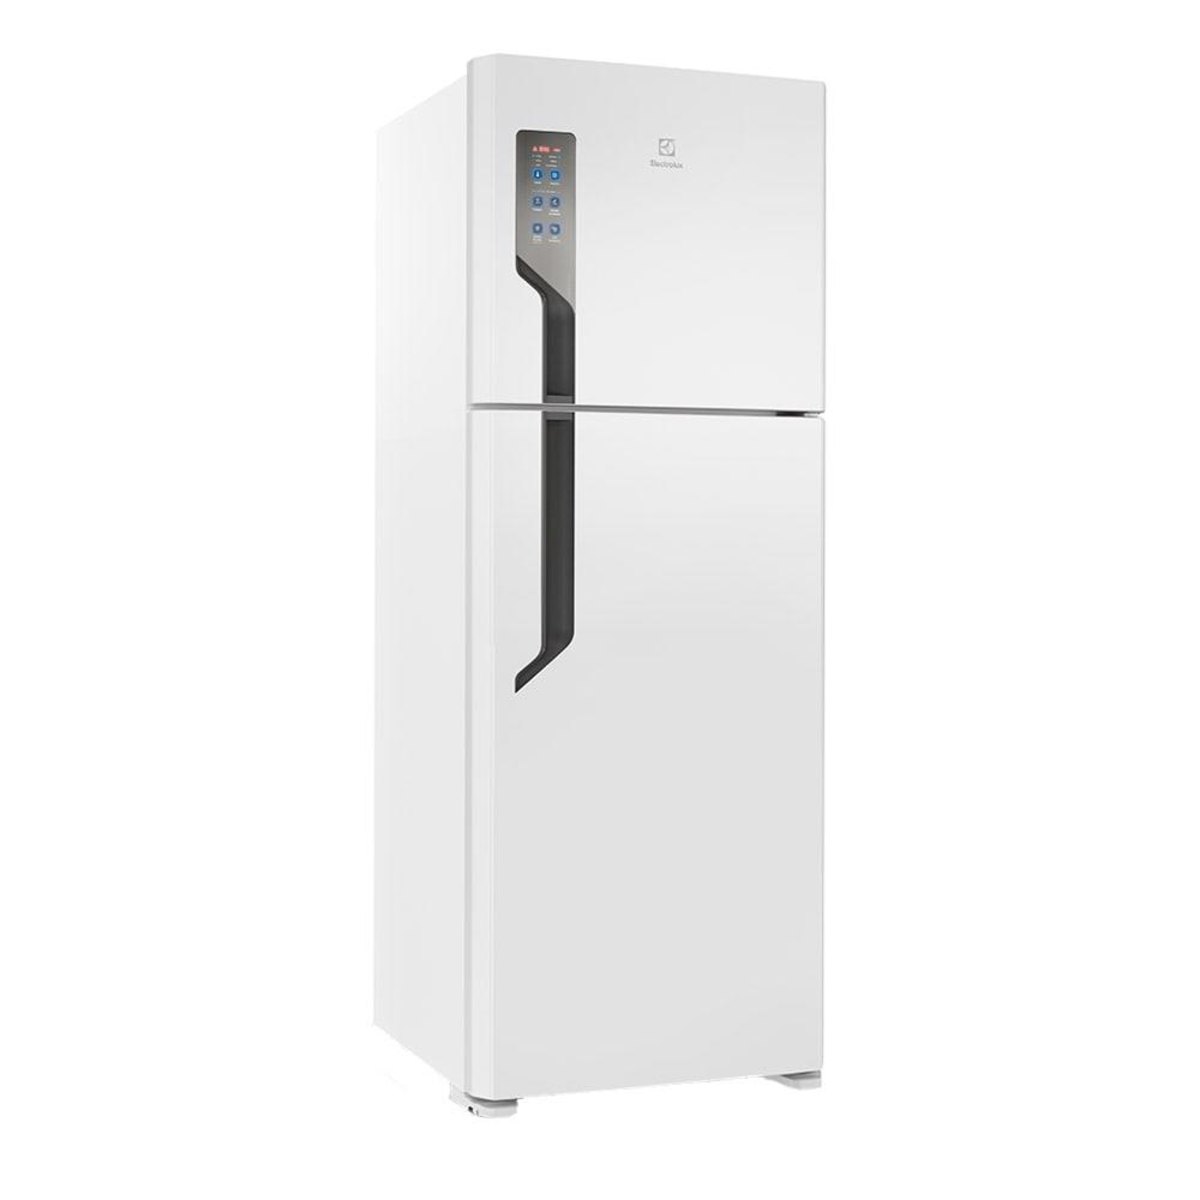 Geladeira/Refrigerador Electrolux Frost Free 2 Portas Top Freezer TF56 474 Litros Branca - 110V